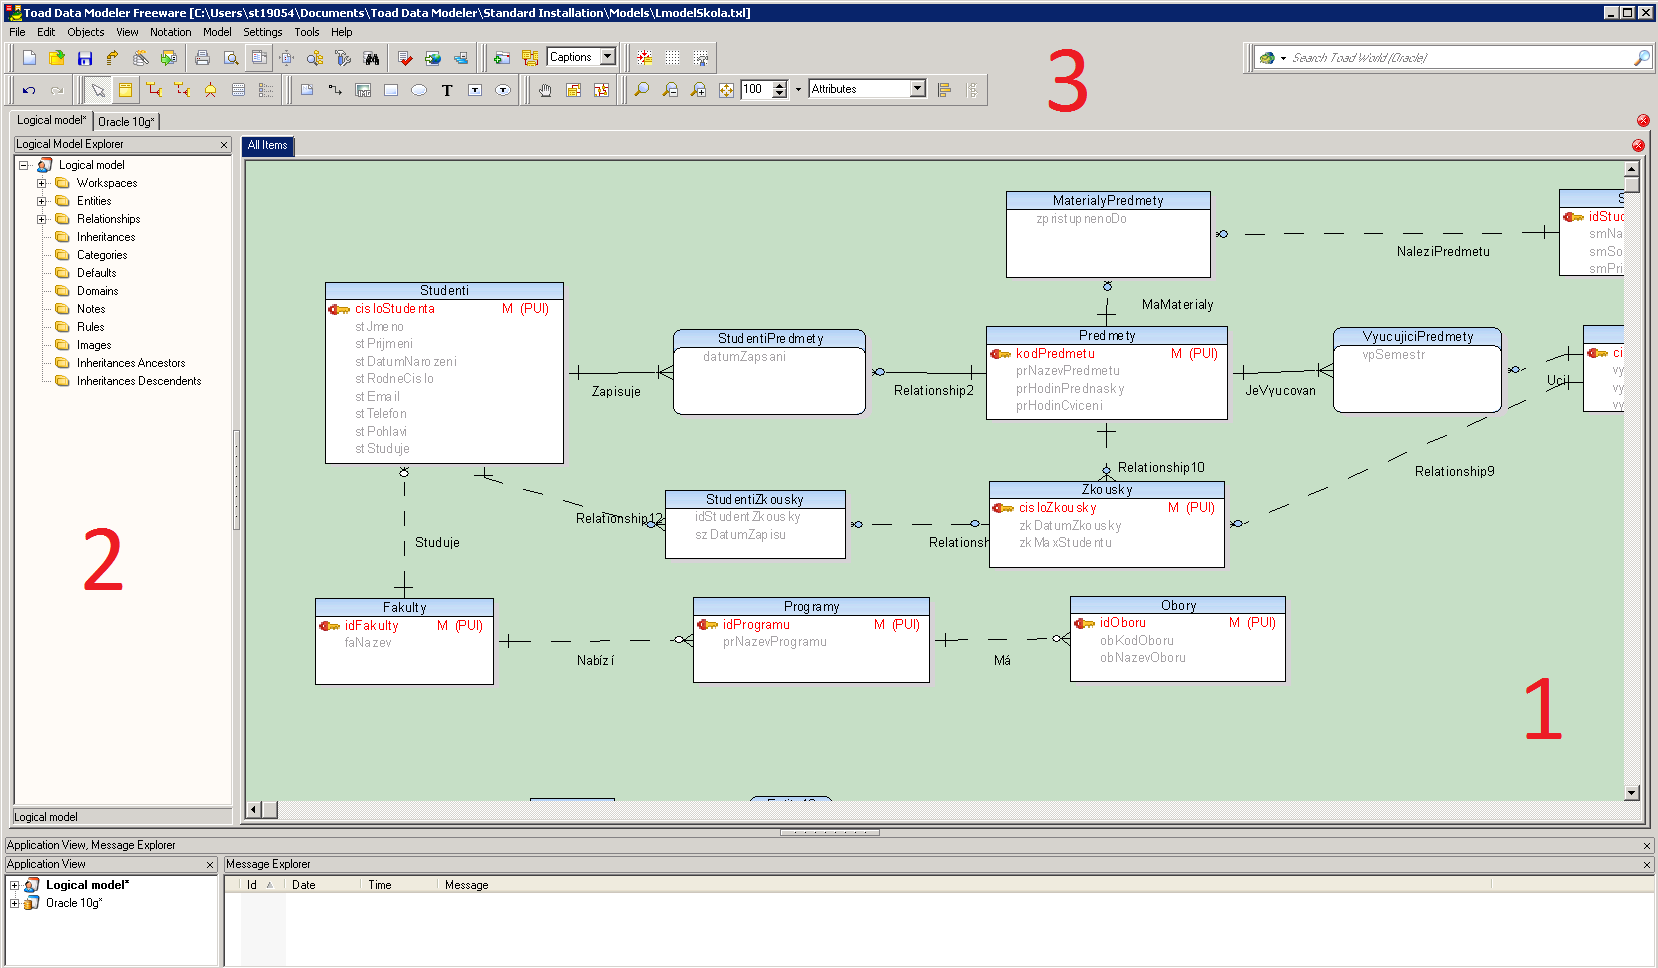 Obrázek 3 - Modelovací nástroj Toad Data Modeler. V podstatě se dá rozdělit na tři základní část: 1. Pracovní plocha (Workspace), do které se tabulky a relace logického modelu umisťují. 2.